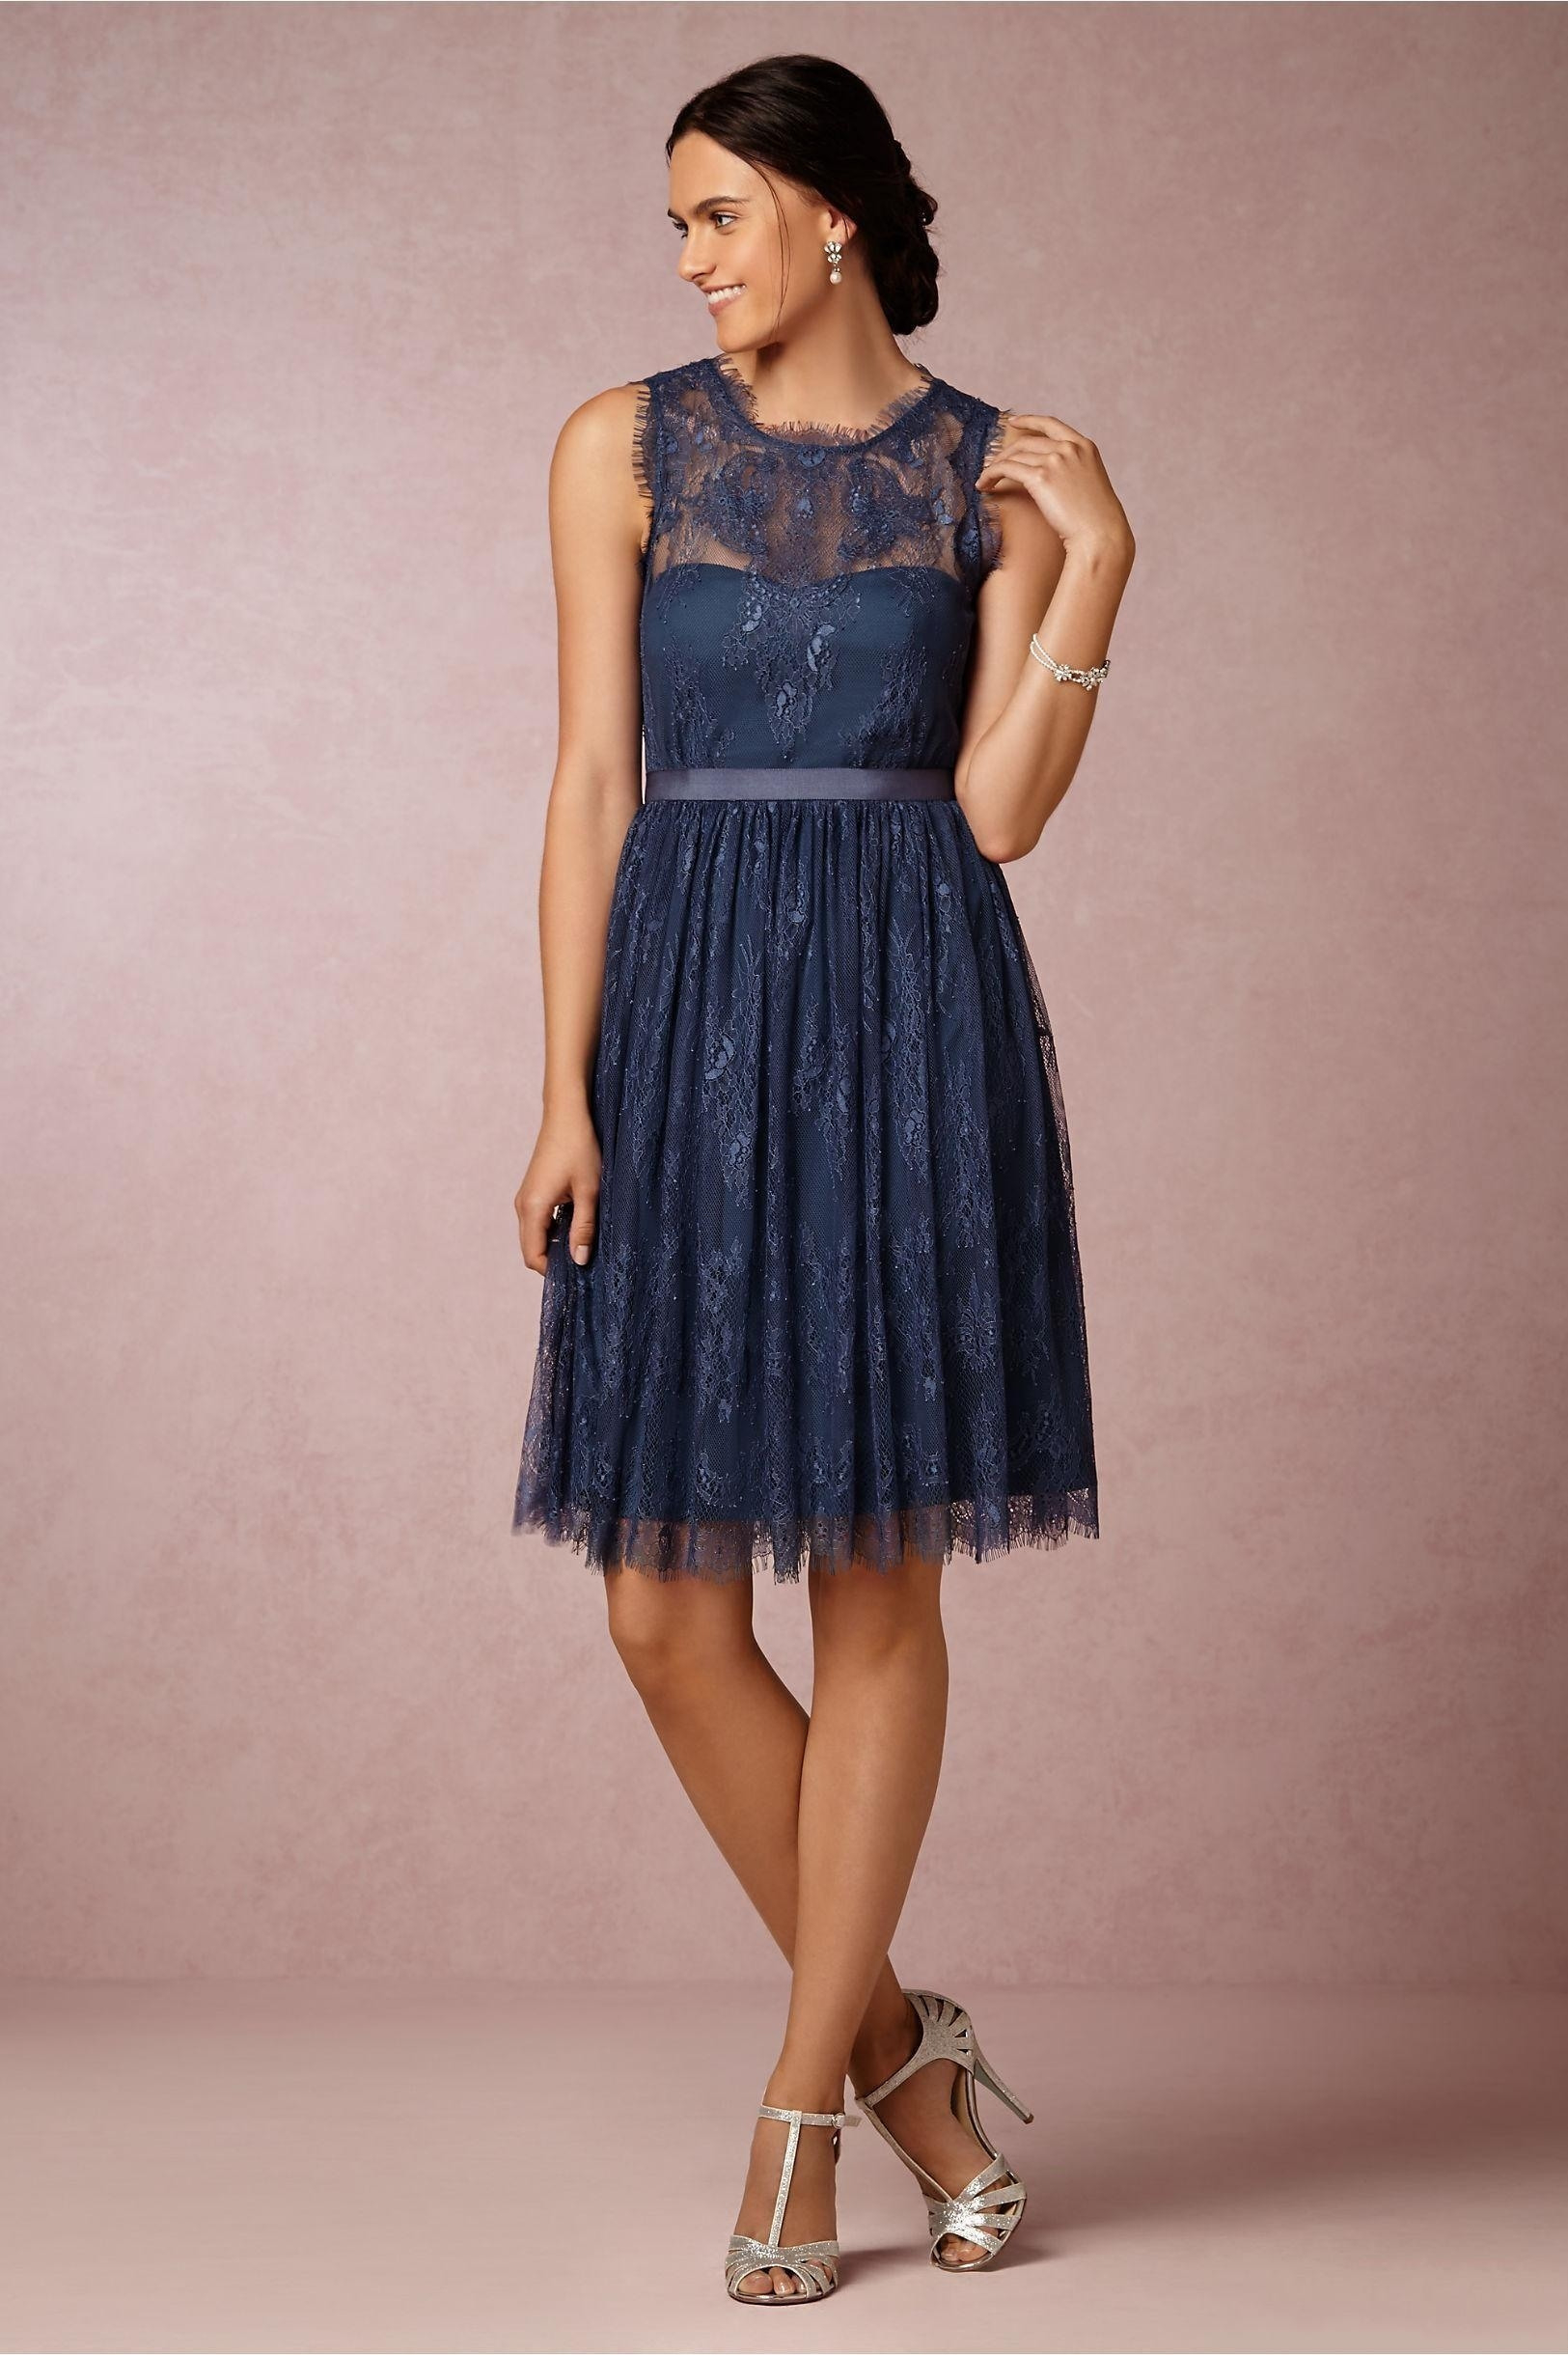 Designer Luxus Kleid Blau Hochzeit Galerie - Abendkleid